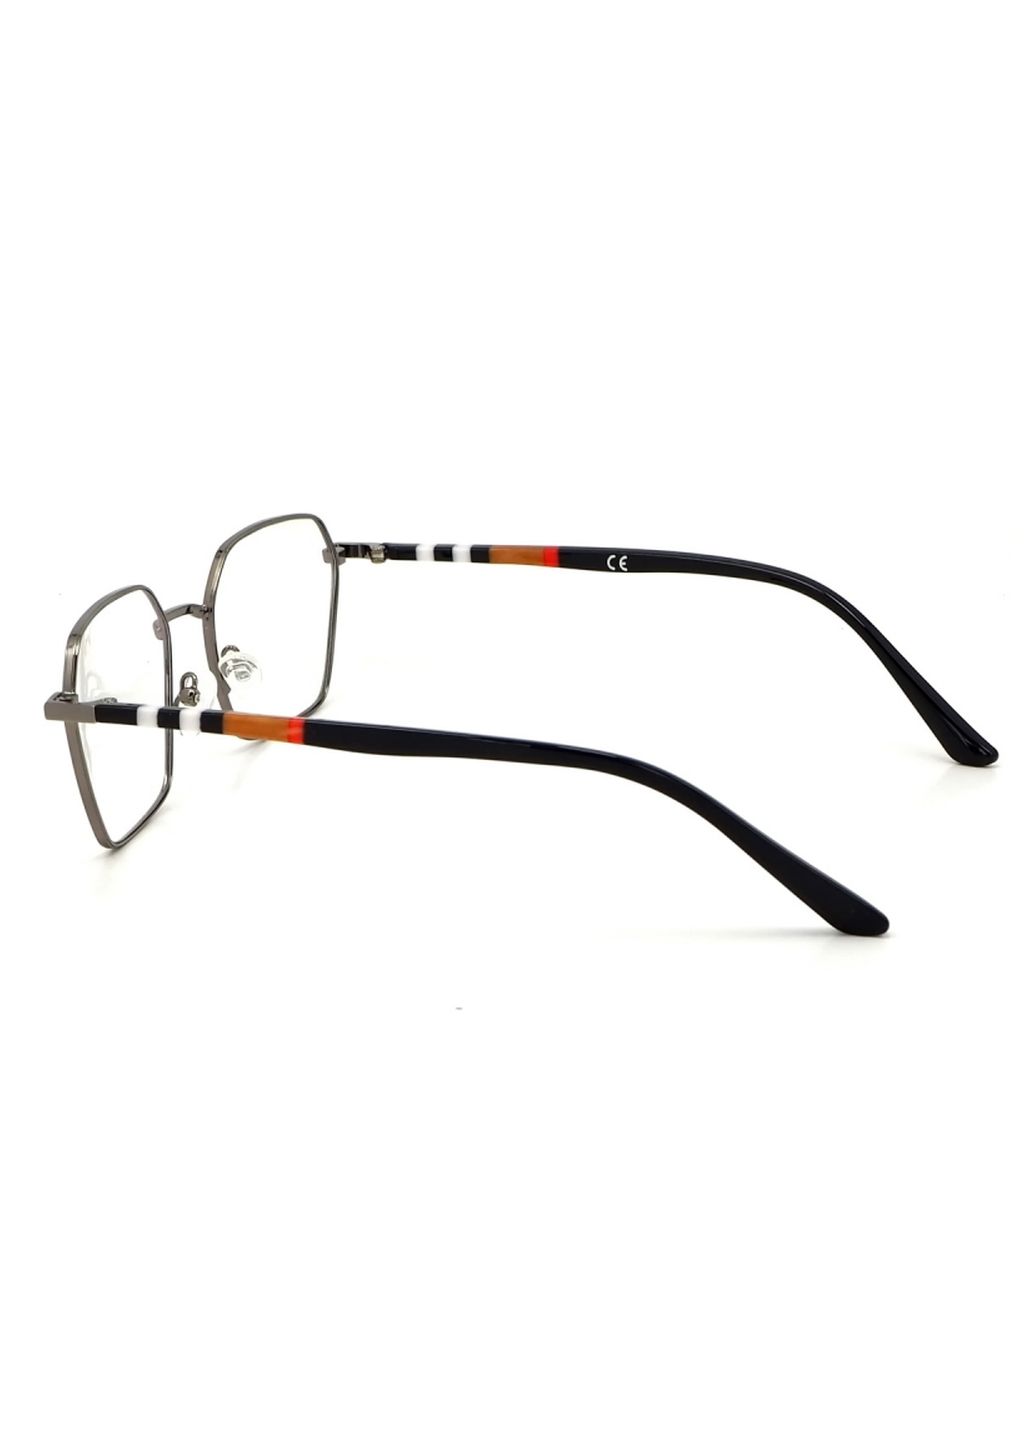 Купить Очки для работы за компьютером Cooper Glasses в серой оправе 124018 в интернет-магазине